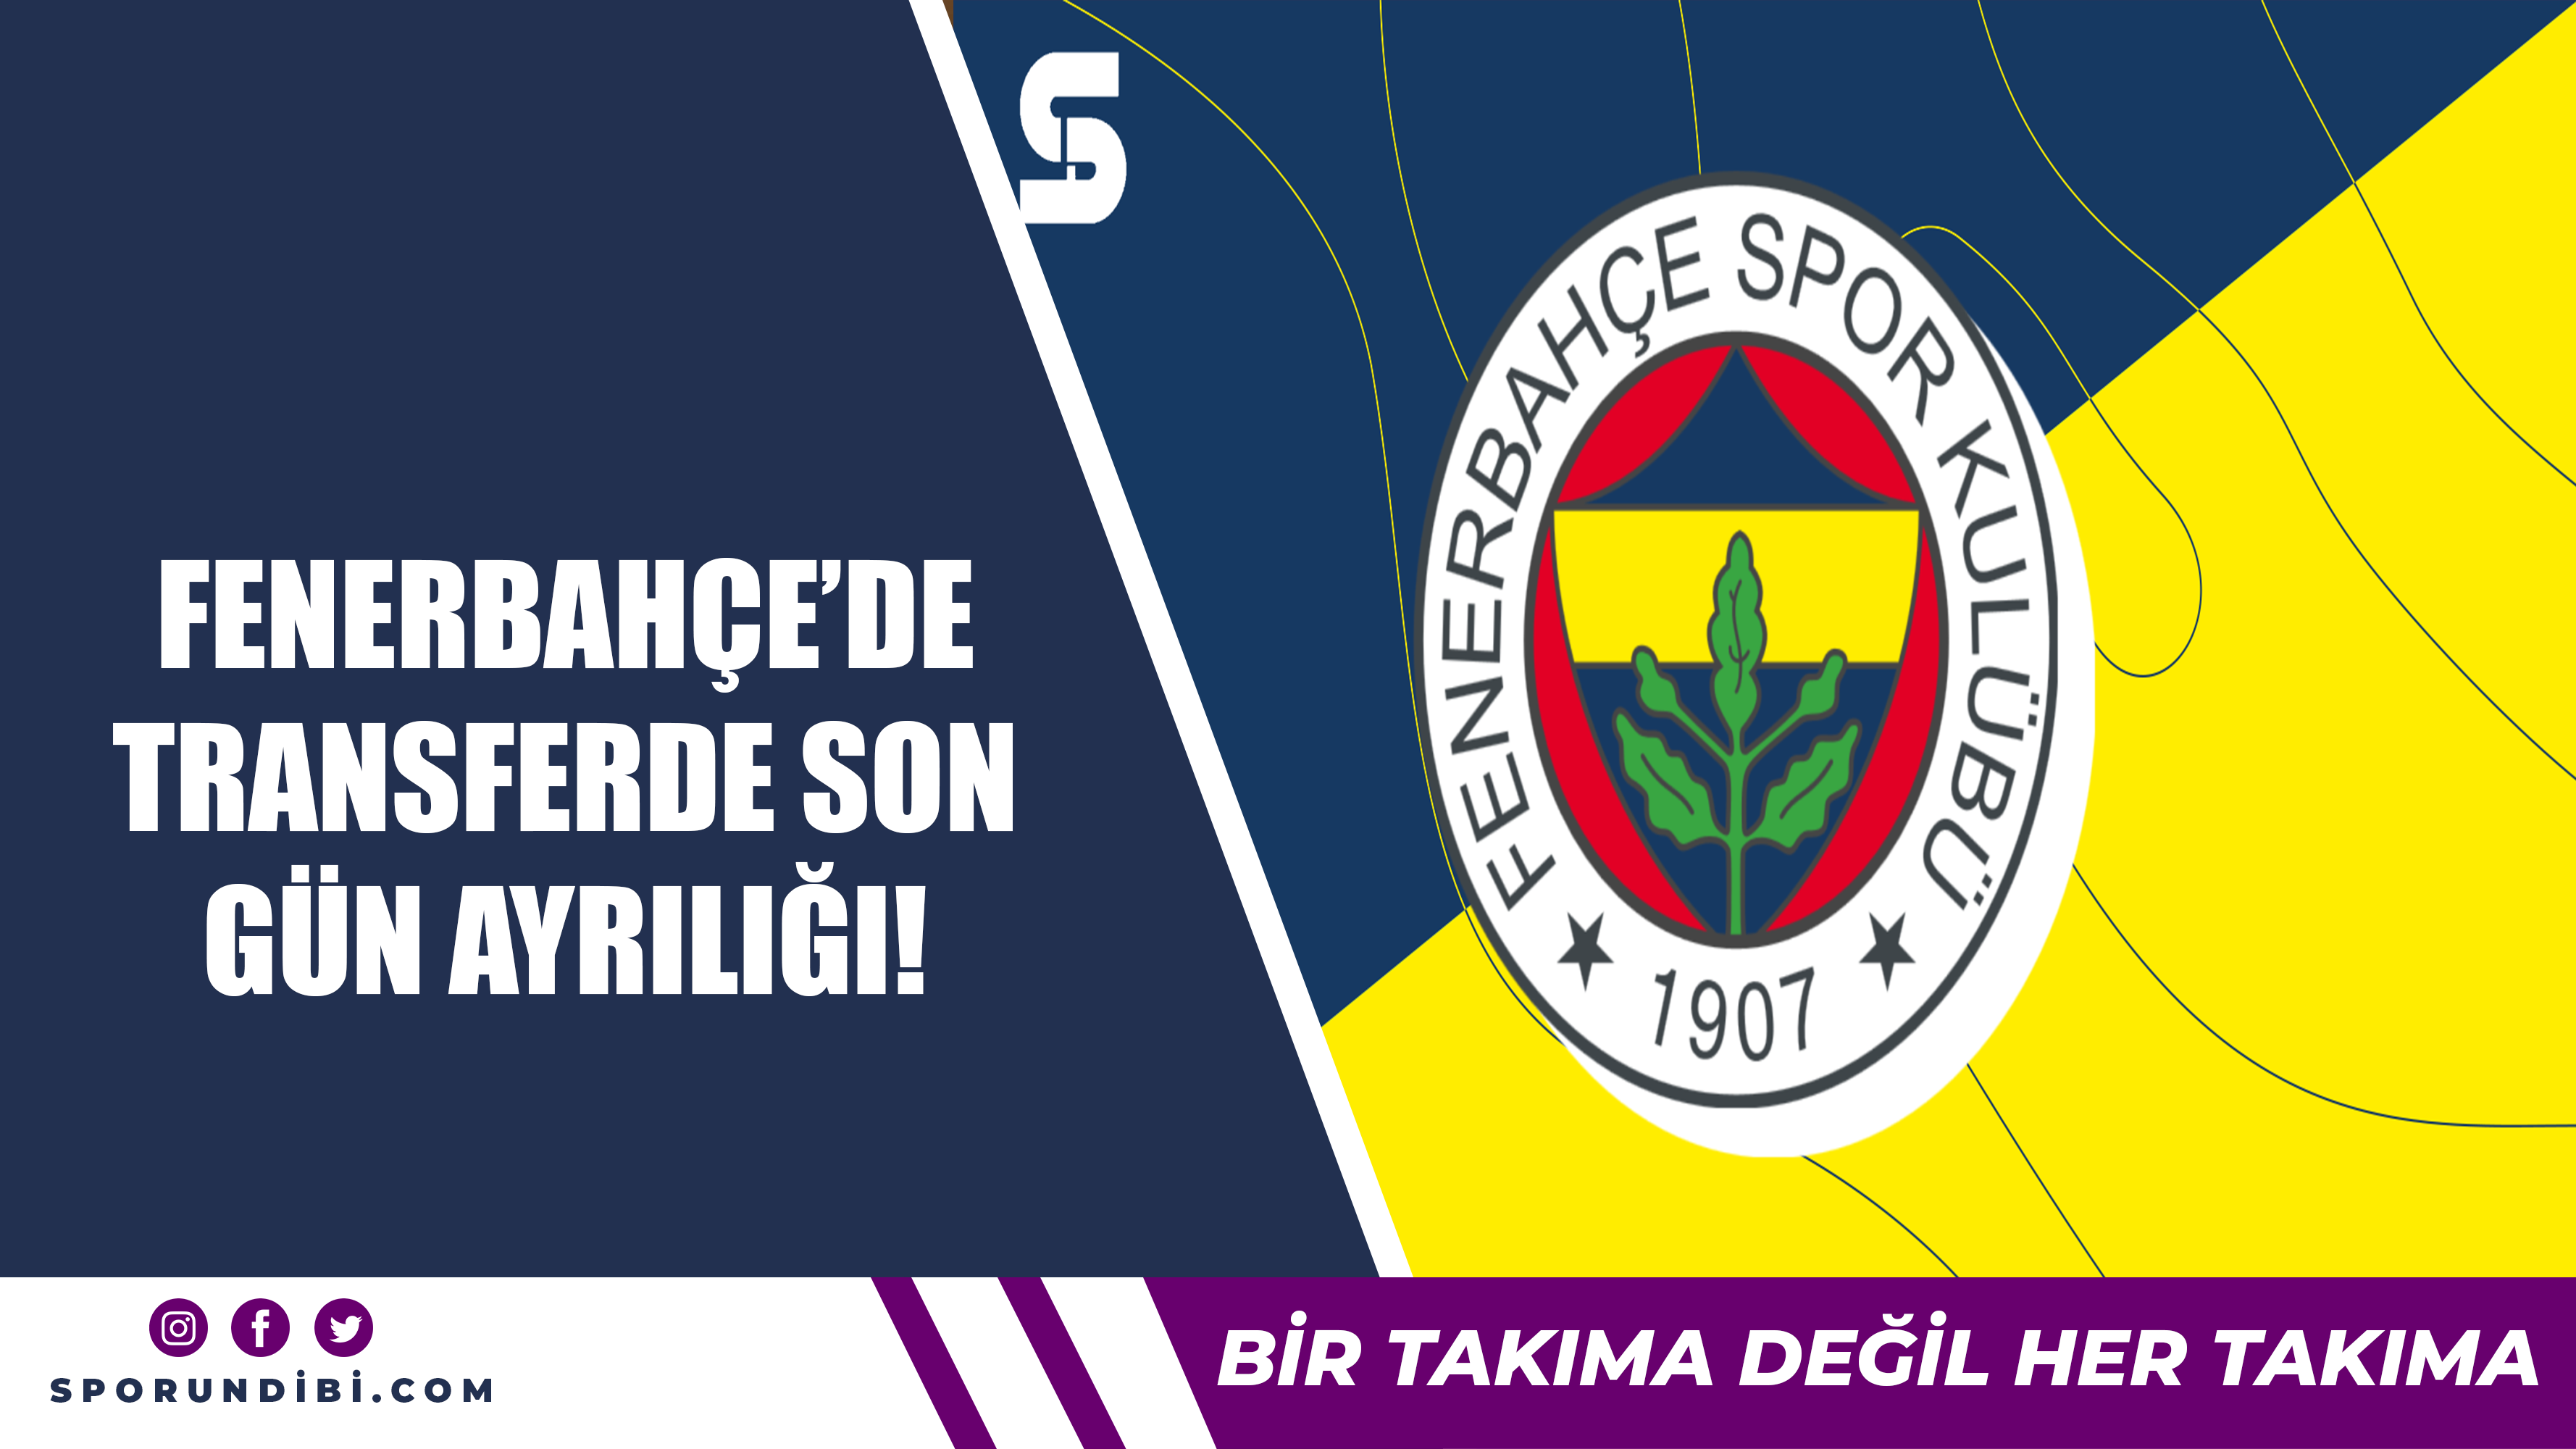 Fenerbahçe'de transferde son gün ayrılığı!